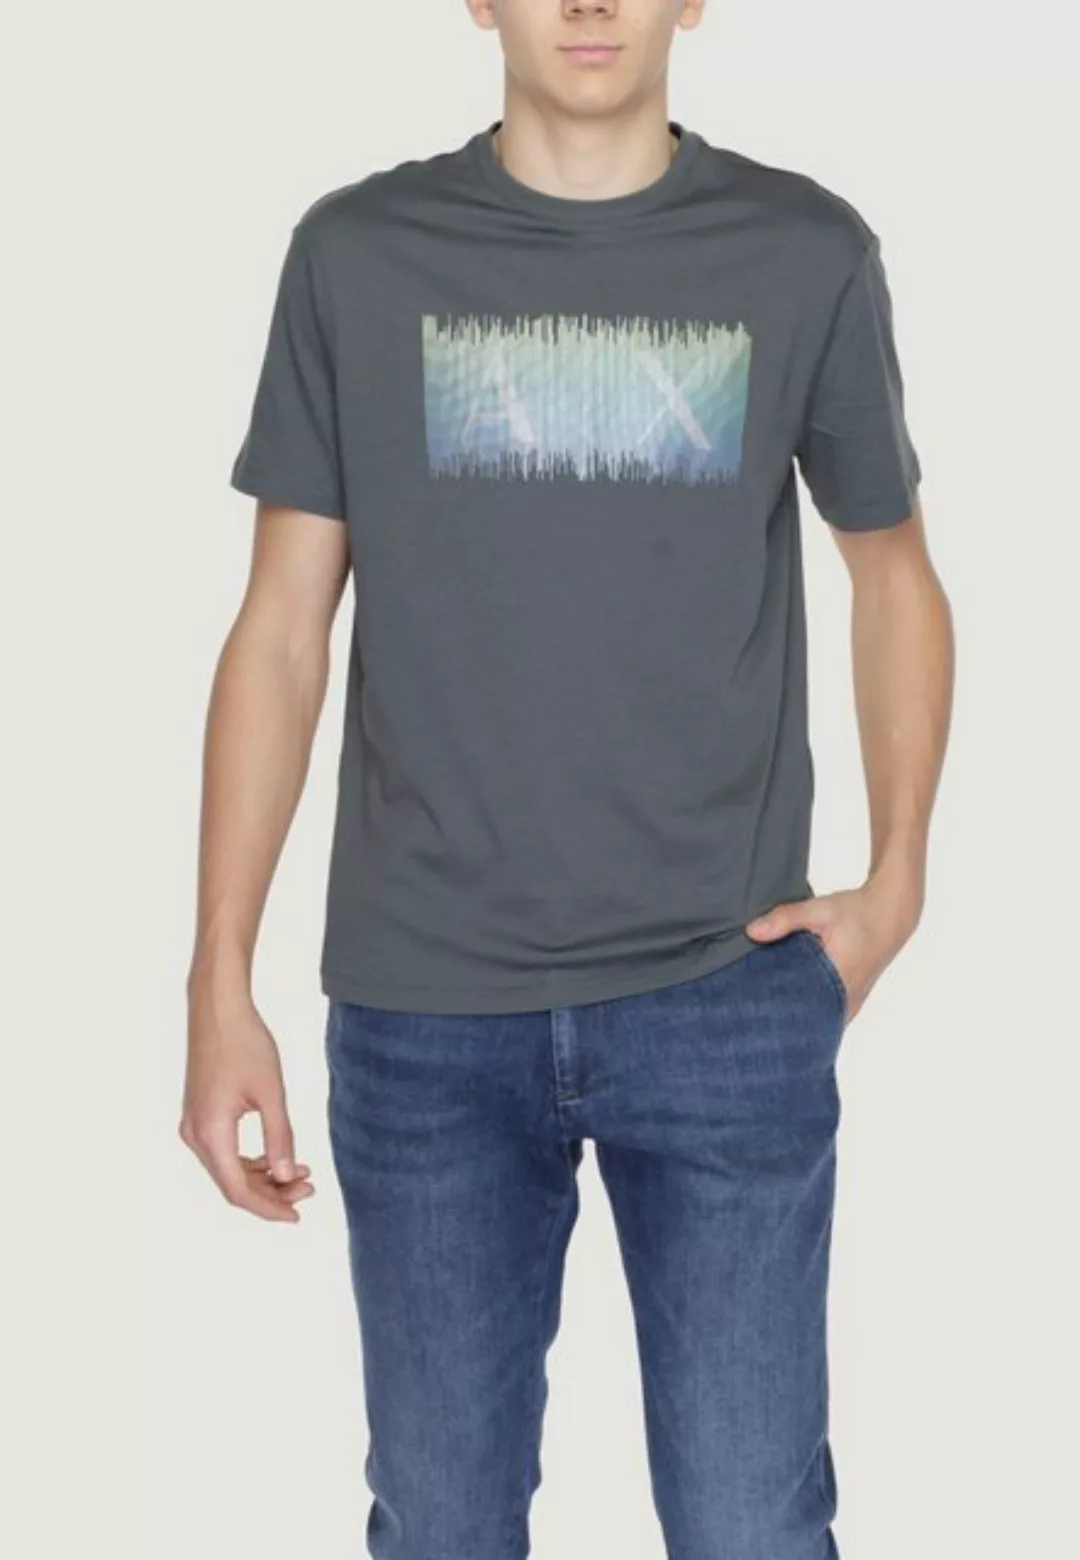 ARMANI EXCHANGE T-Shirt günstig online kaufen